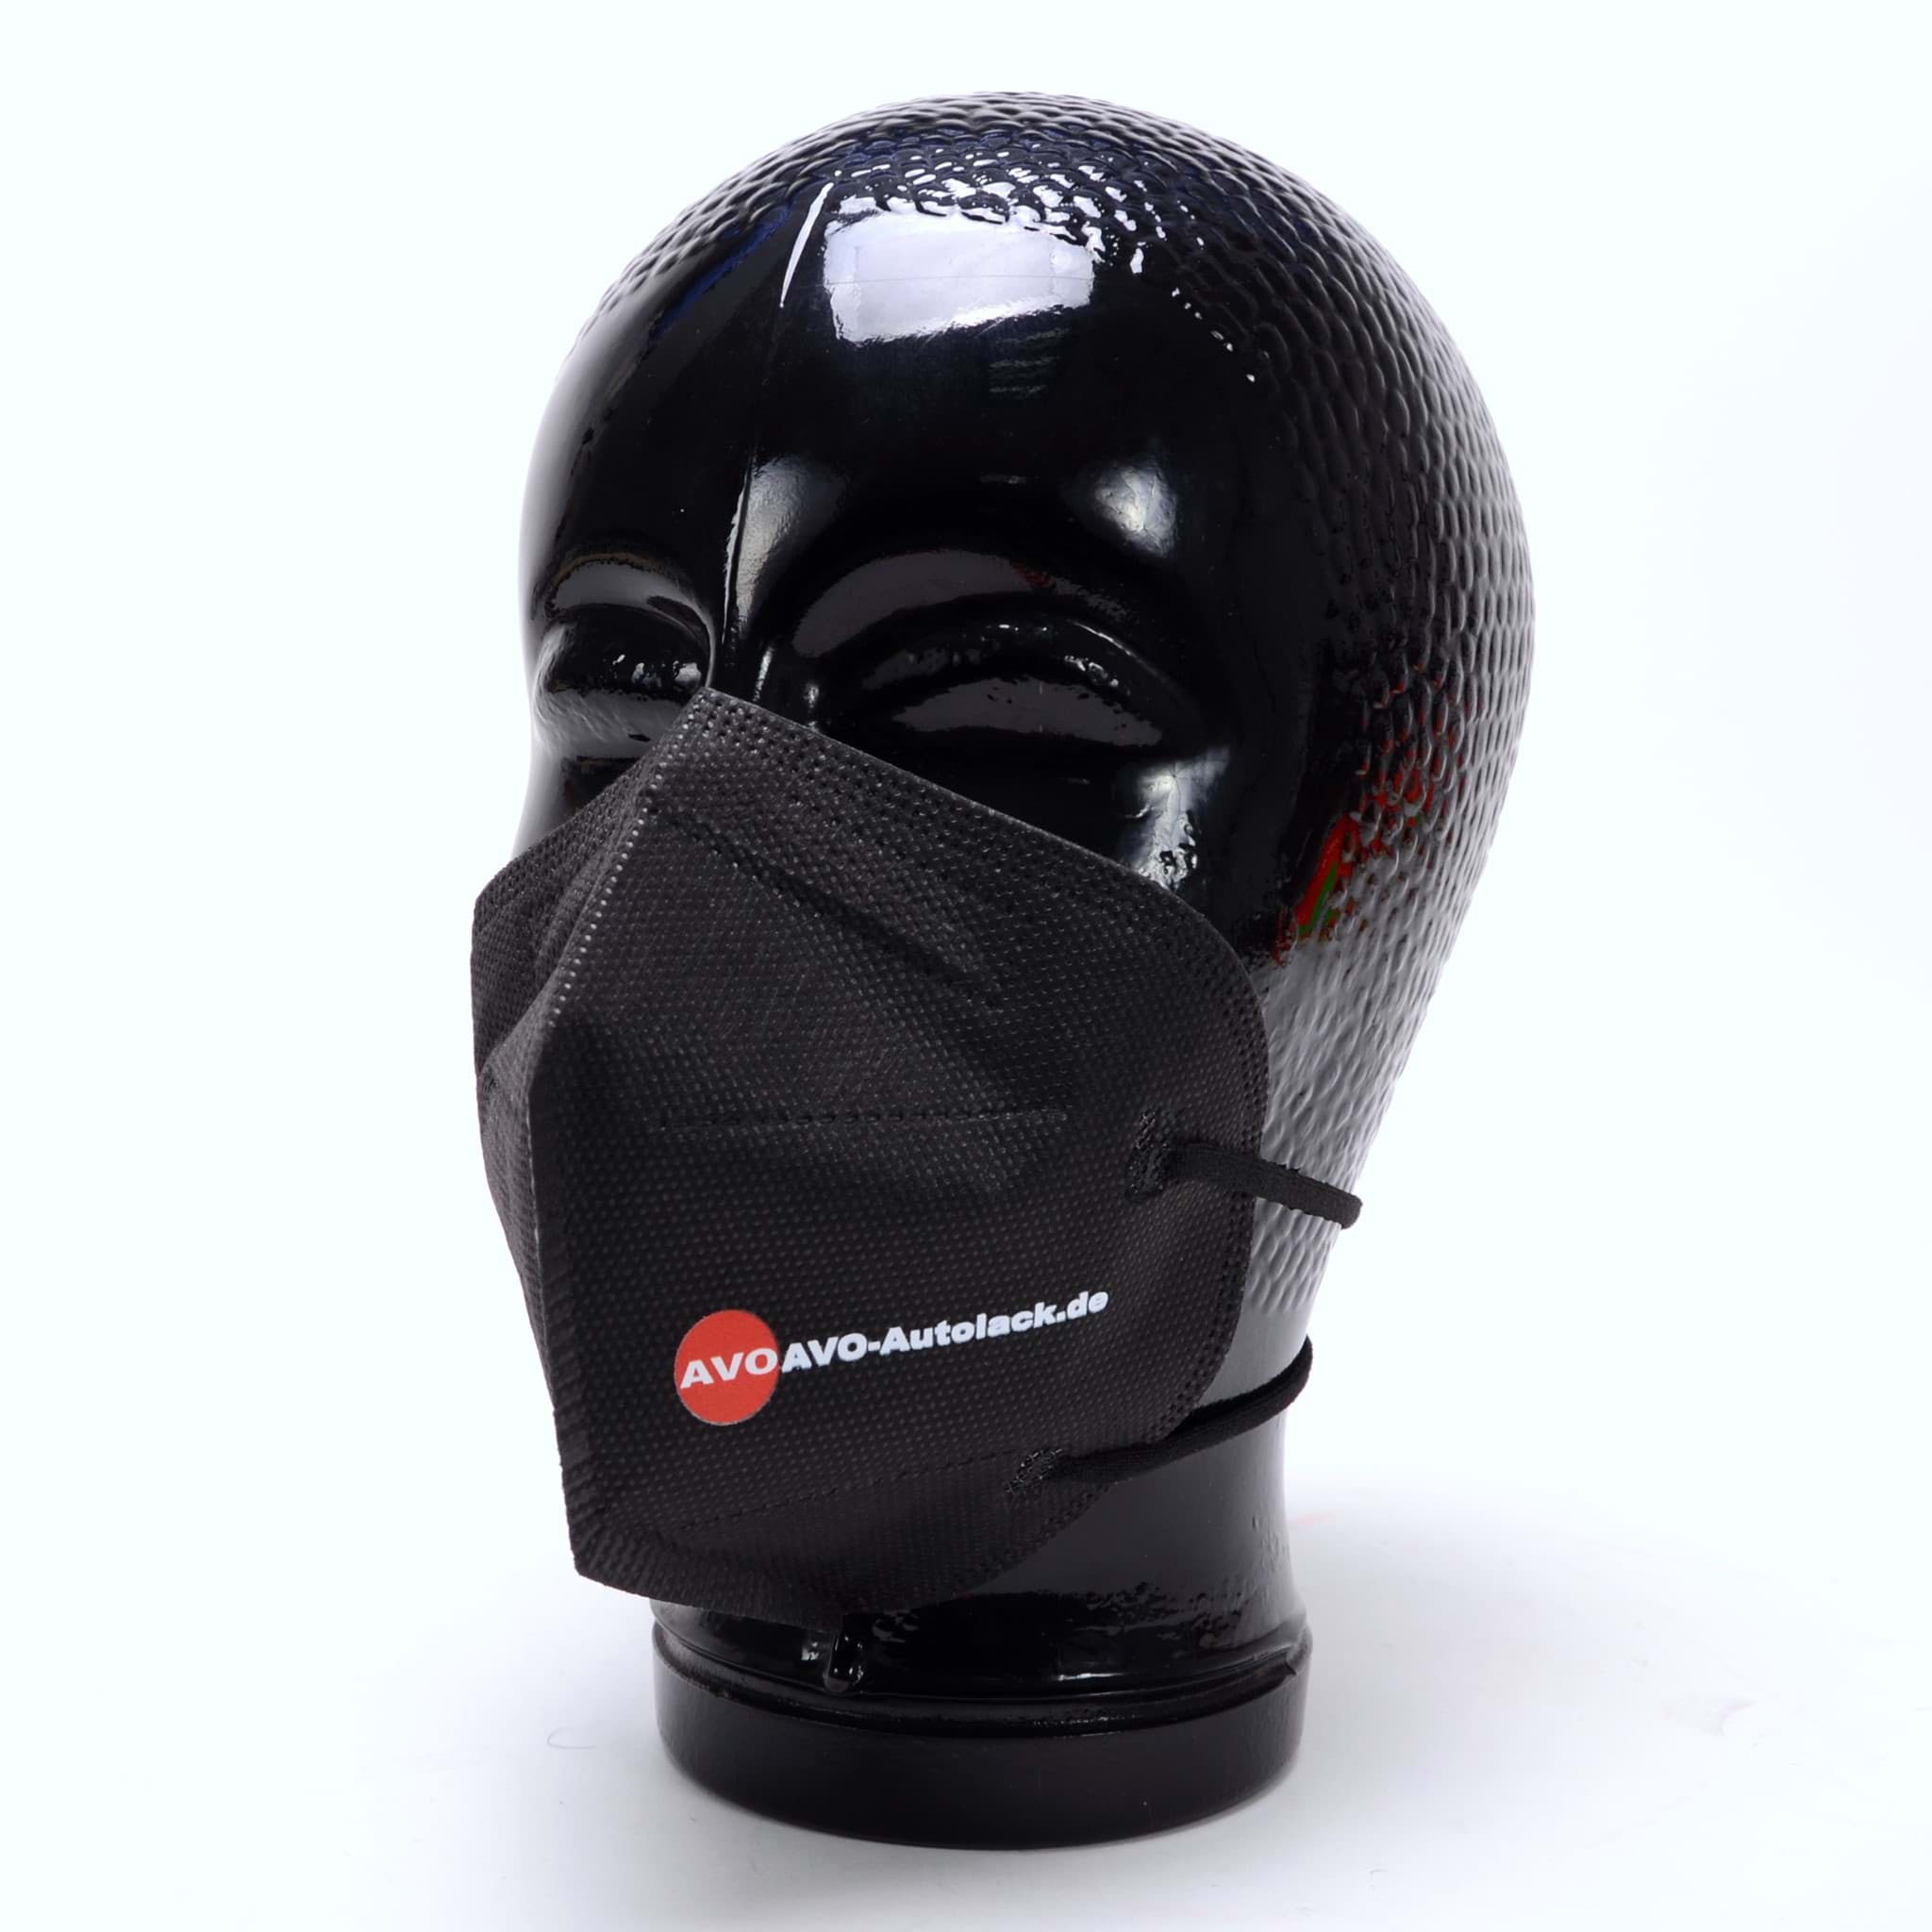  FFP2 Masken schwarz 10 Stück , Mundschutz, Atemschutzmaske  resmi